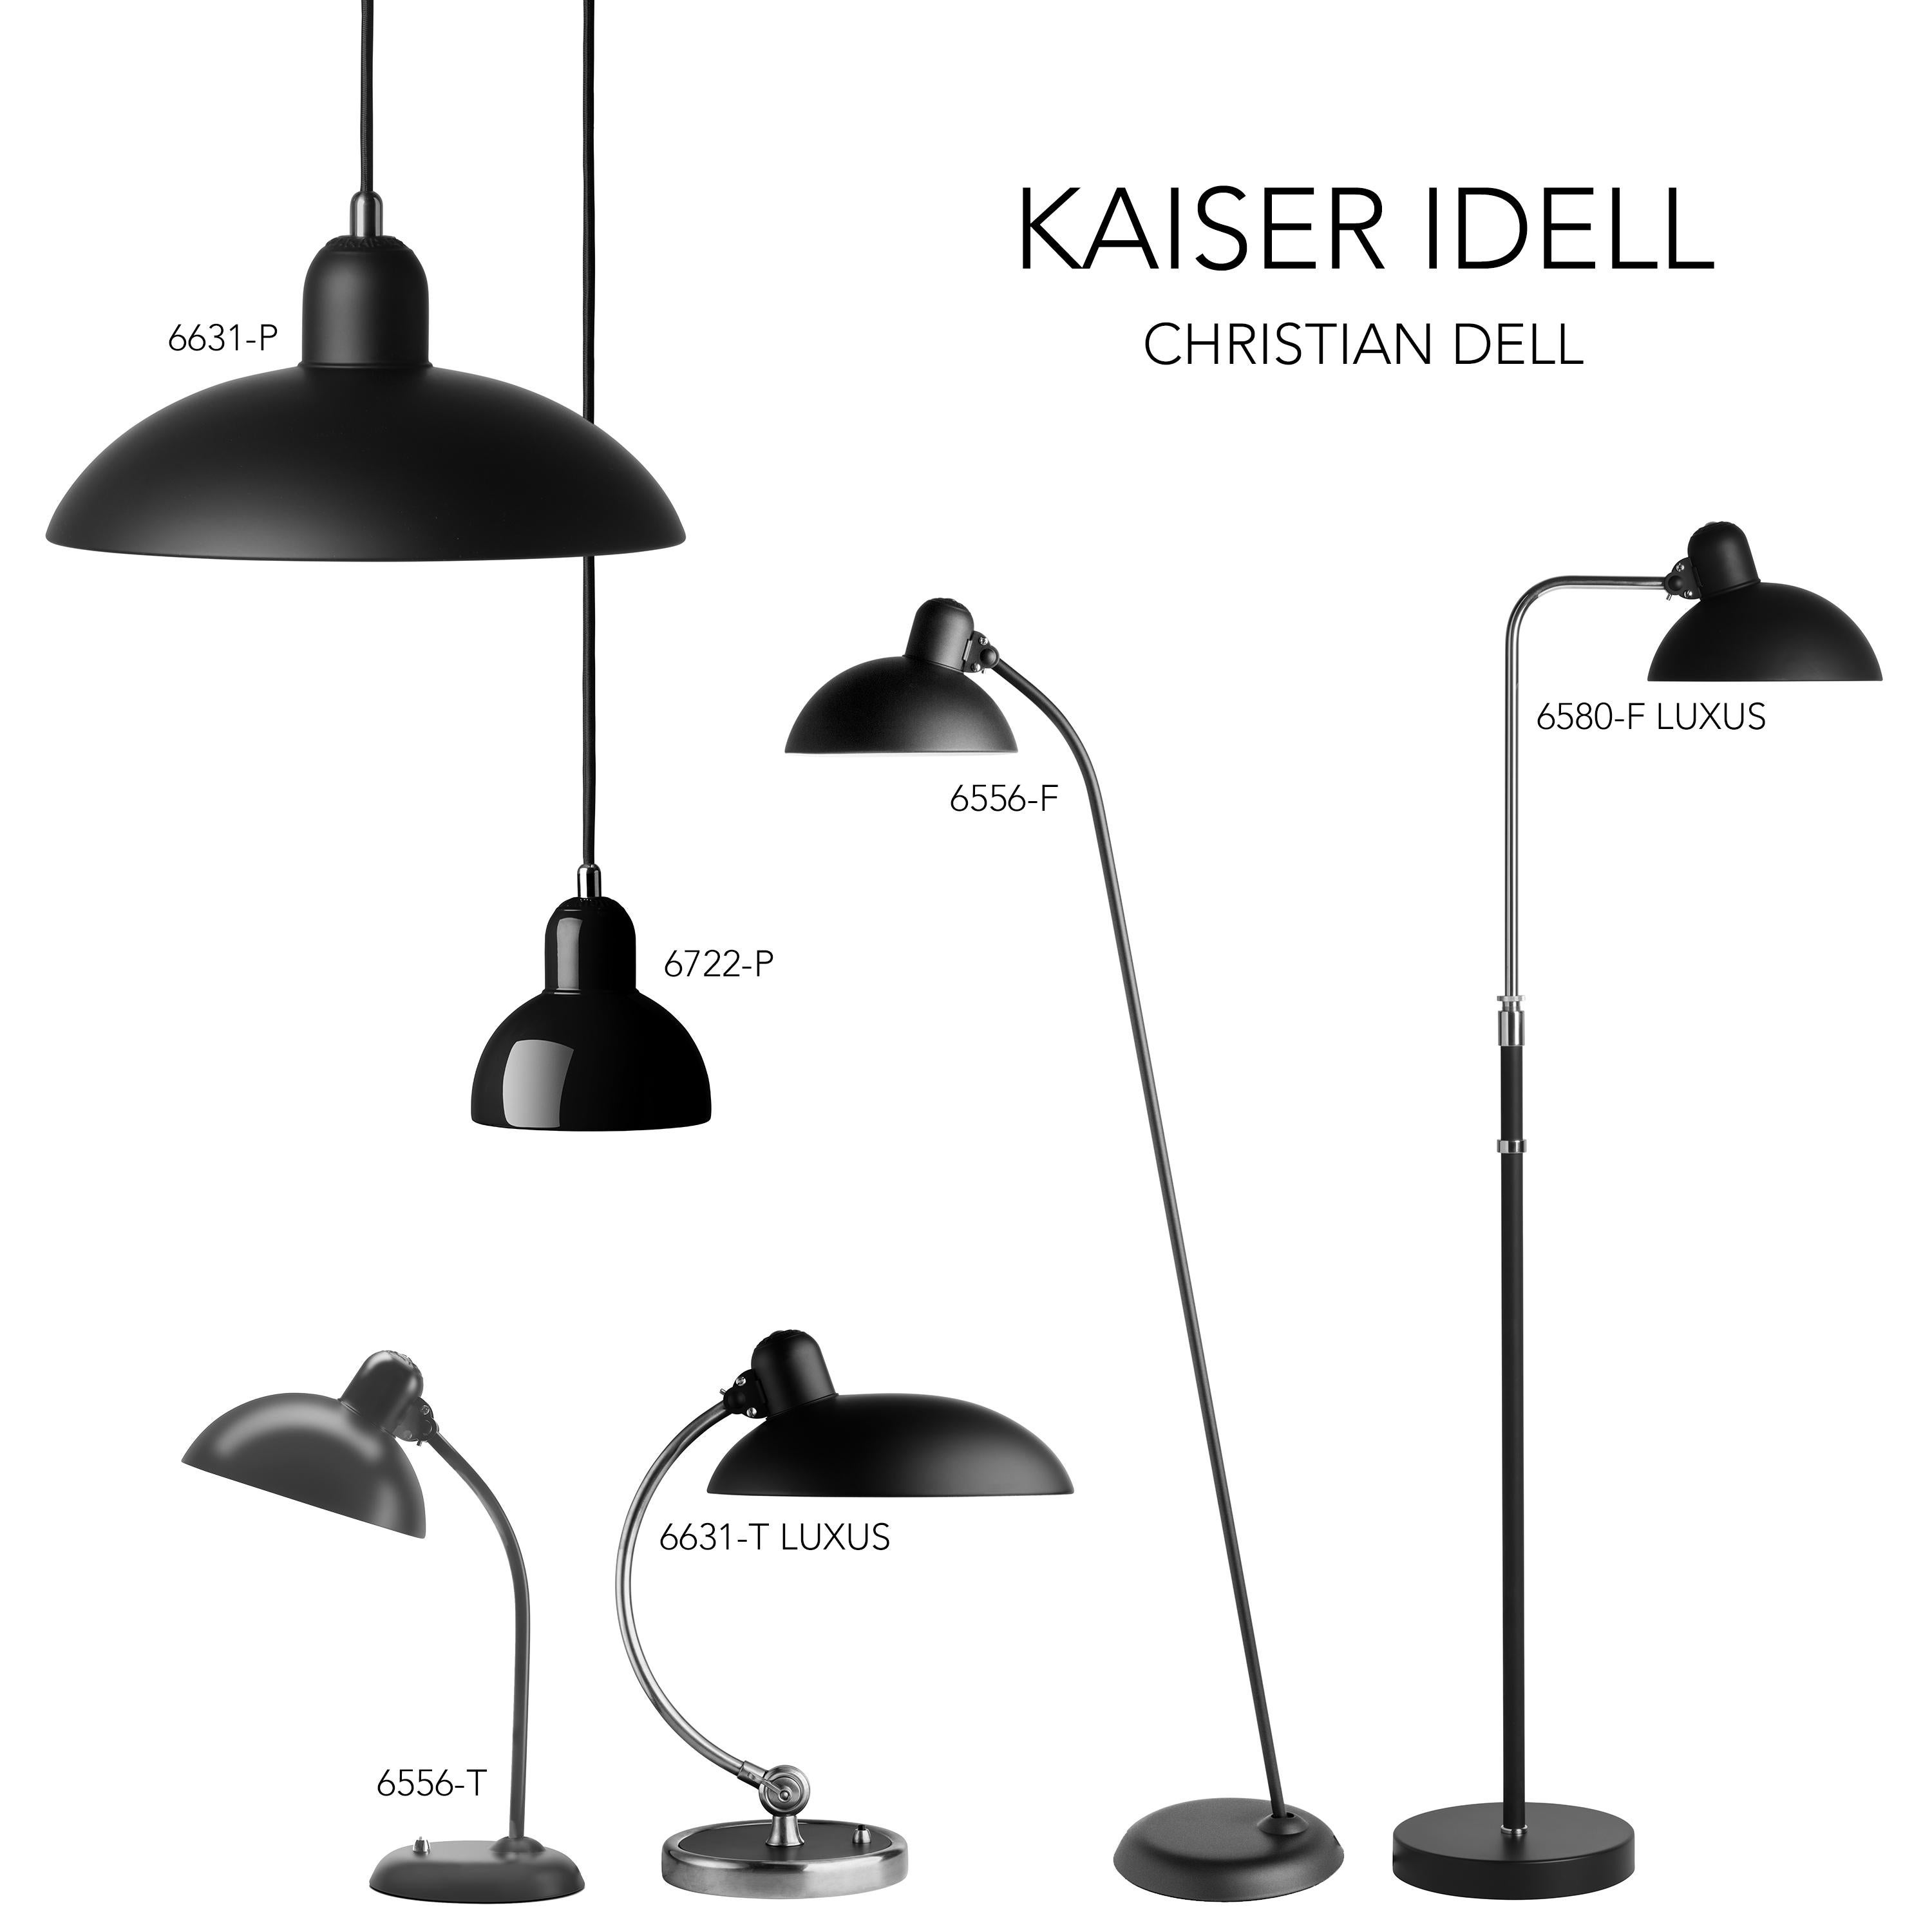 Christian Dell 'Kaiser Idell 6631-P' Pendant for Fritz Hansen in Gloss Black For Sale 9